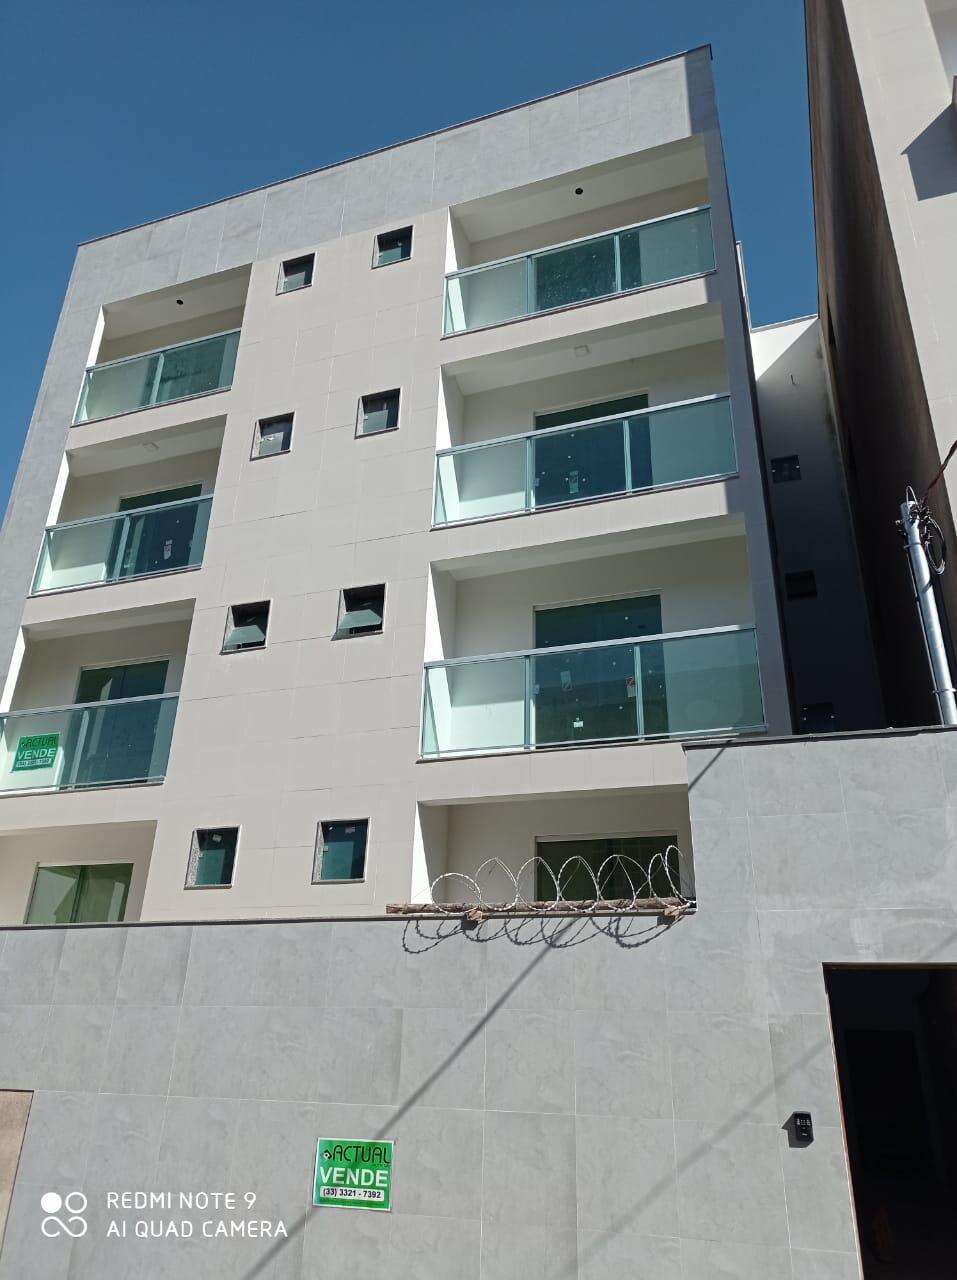 Apartamento 3 quartos à venda no Santa Zita: ed7d797e-4-whatsapp-image-2022-11-28-at-09.26.43.jpeg